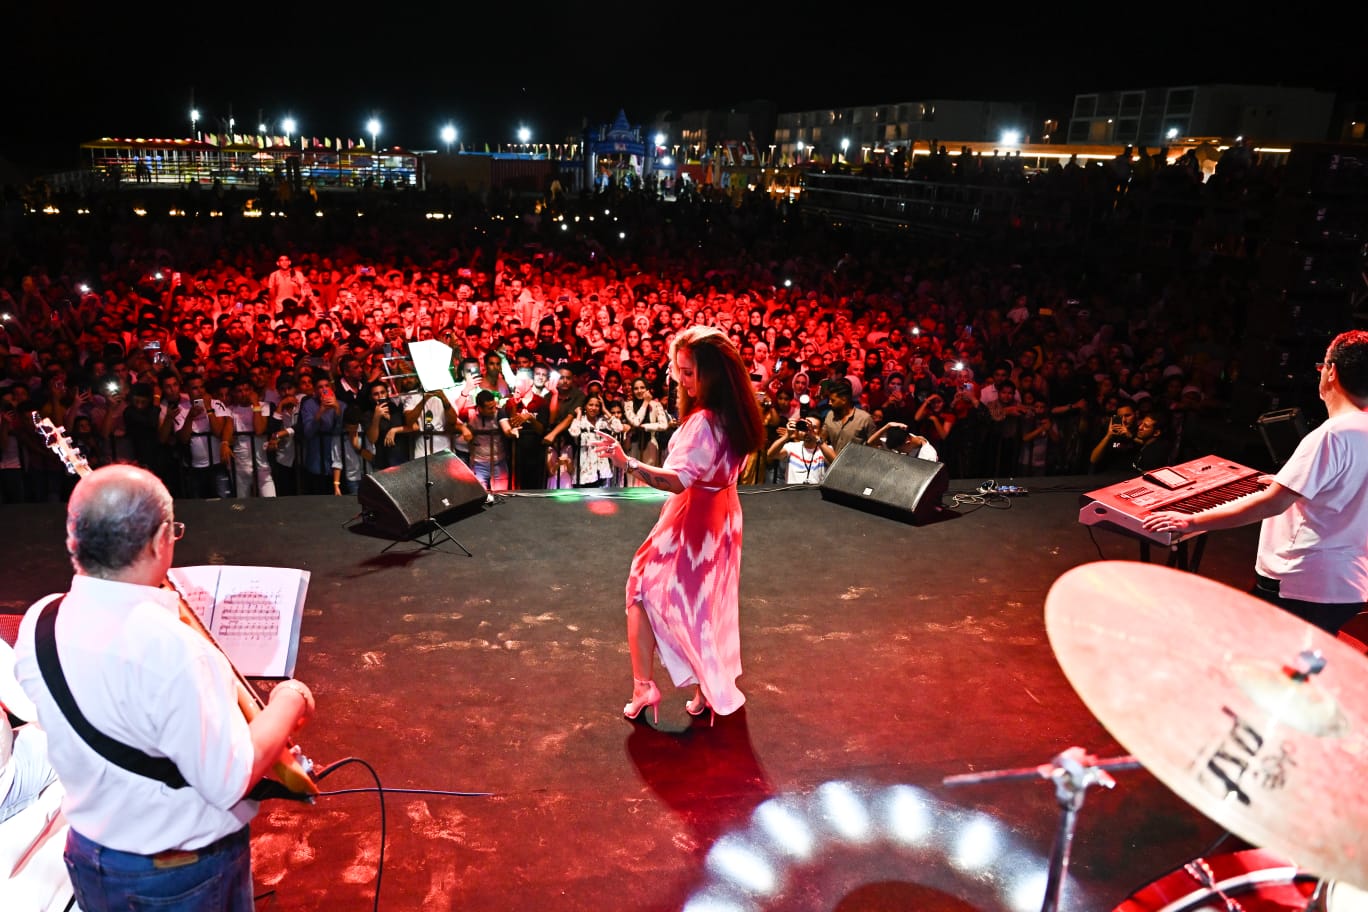 نيكول سابا تتألق في حفلها بالمنصورة الجديدة بأجمل أغنياتها (9)